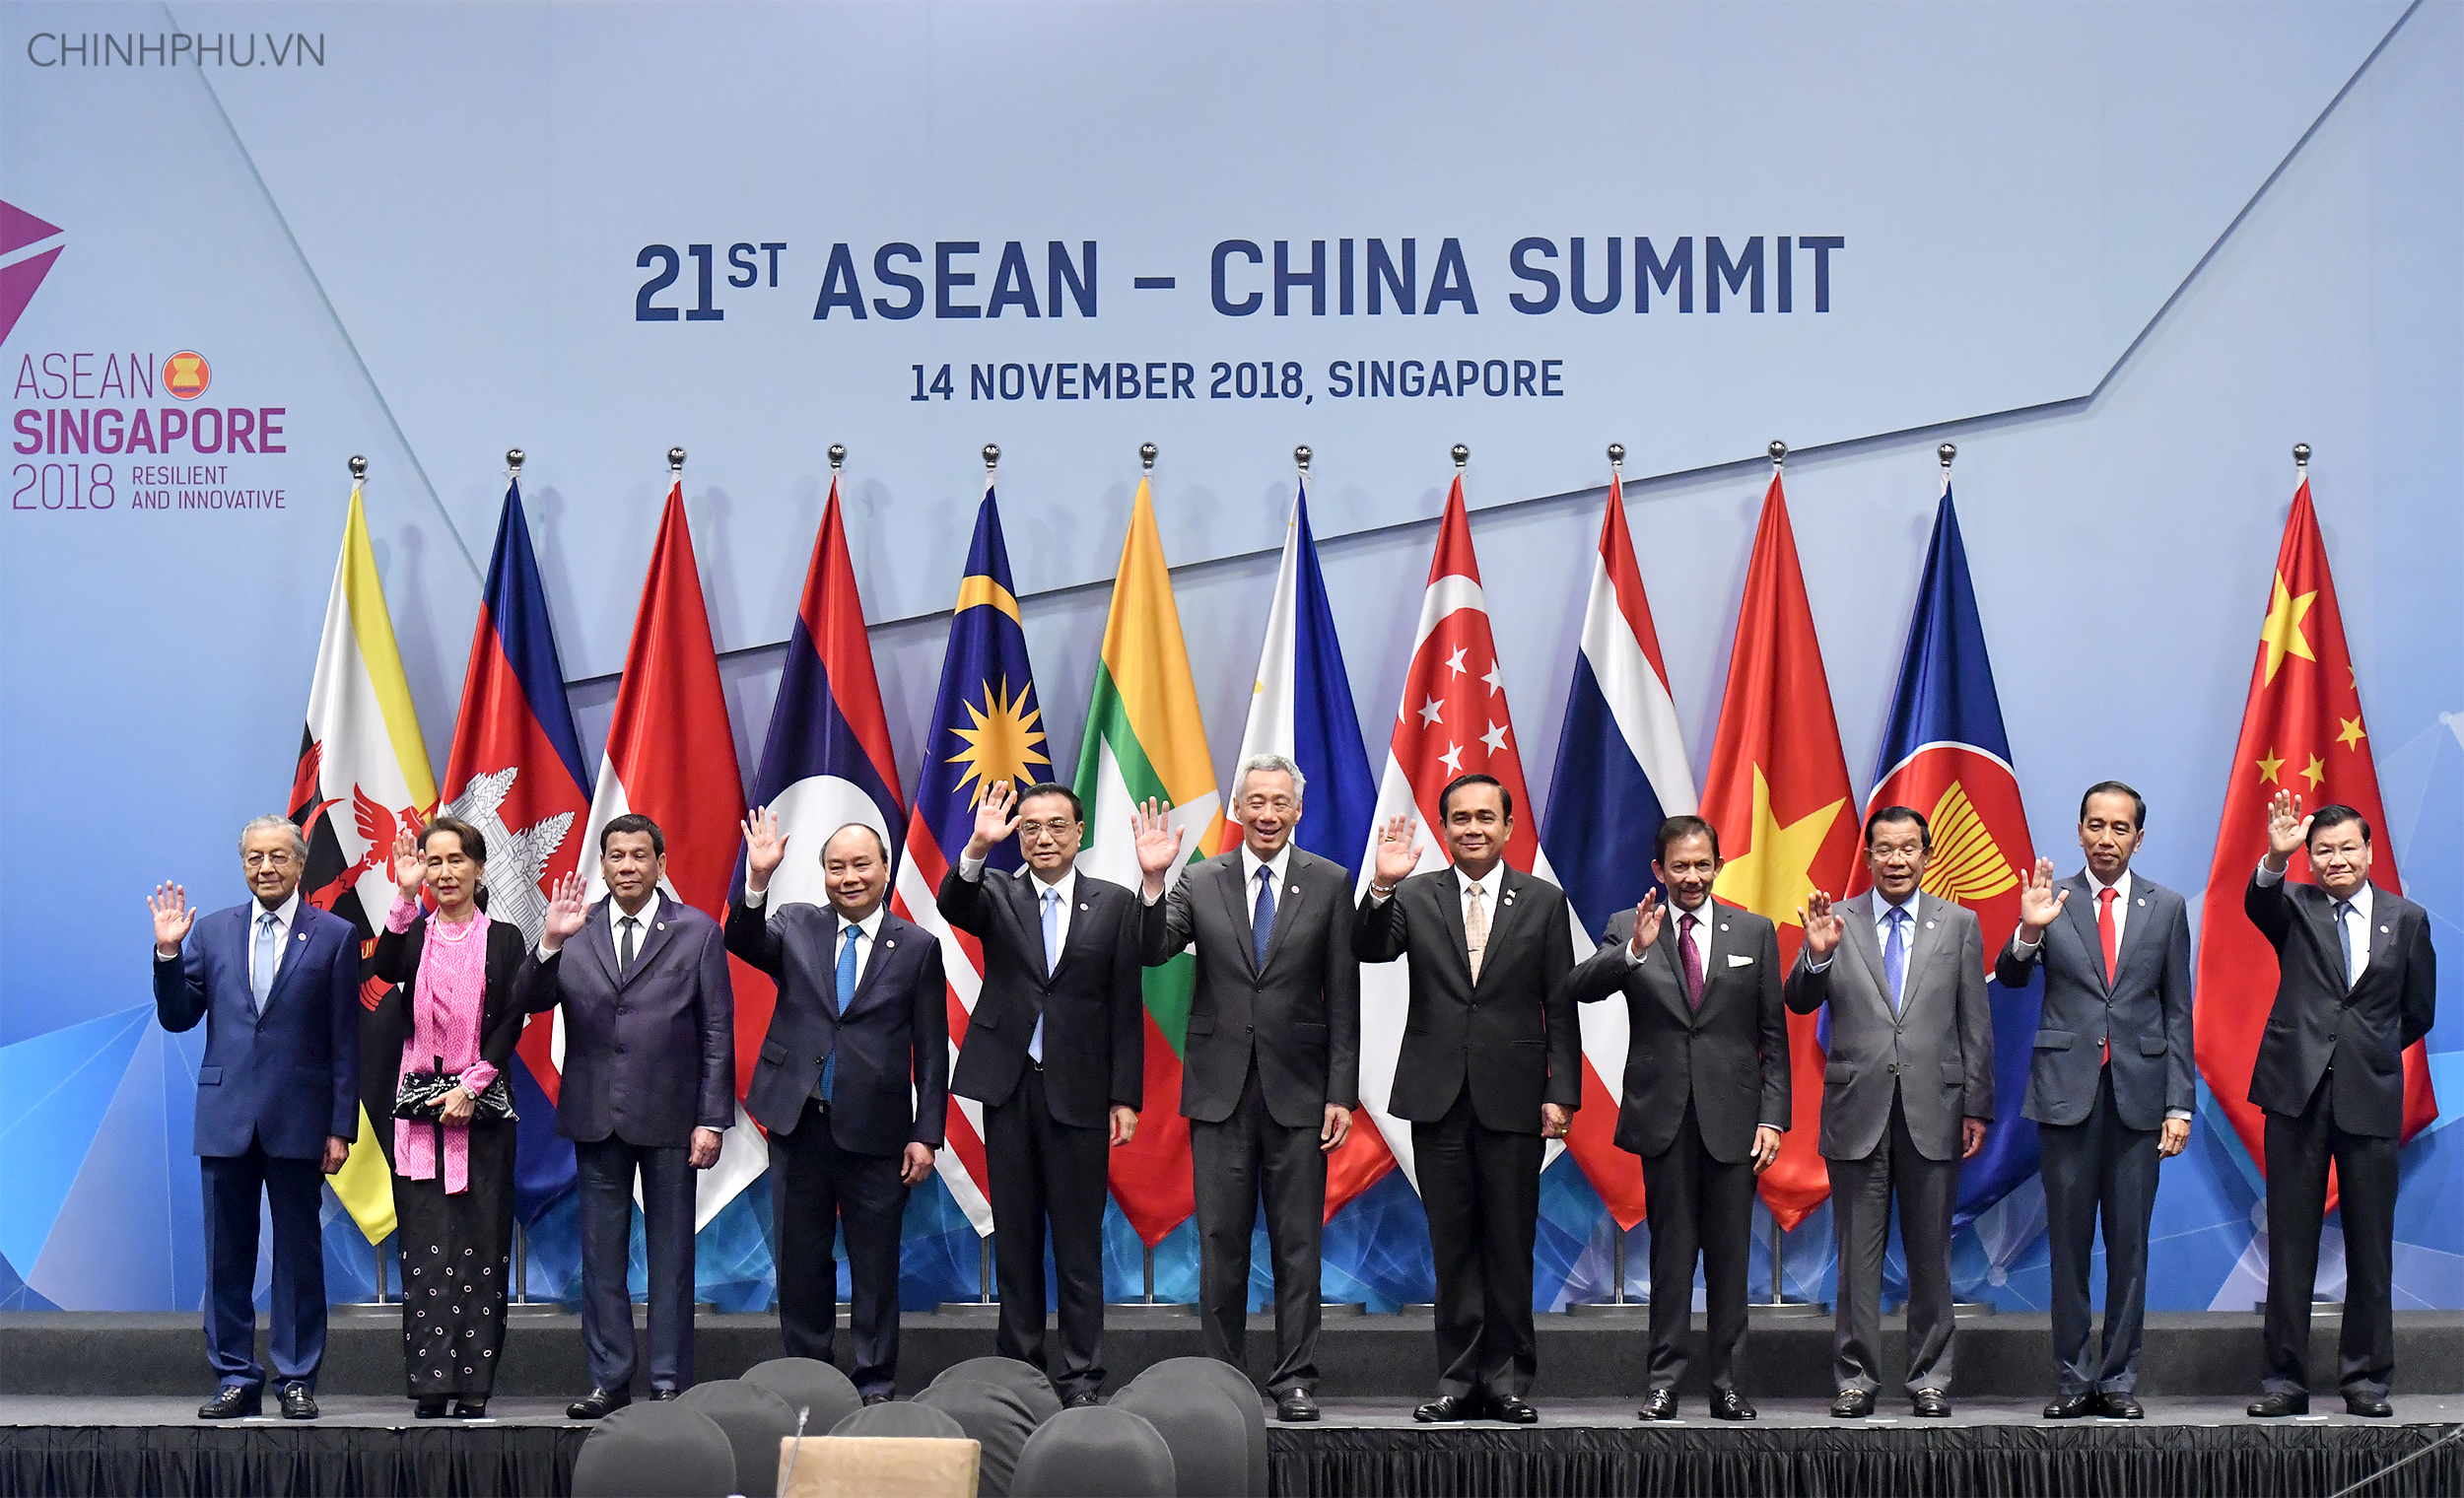 Thủ tướng Nguyễn Xuân Phúc cùng các nhà lãnh đạo ASEAN và Trung Quốc tham dự Hội nghị Cấp cao ASEAN - Trung Quốc lần thứ 21 Ảnh: VGP/Quang Hiếu)